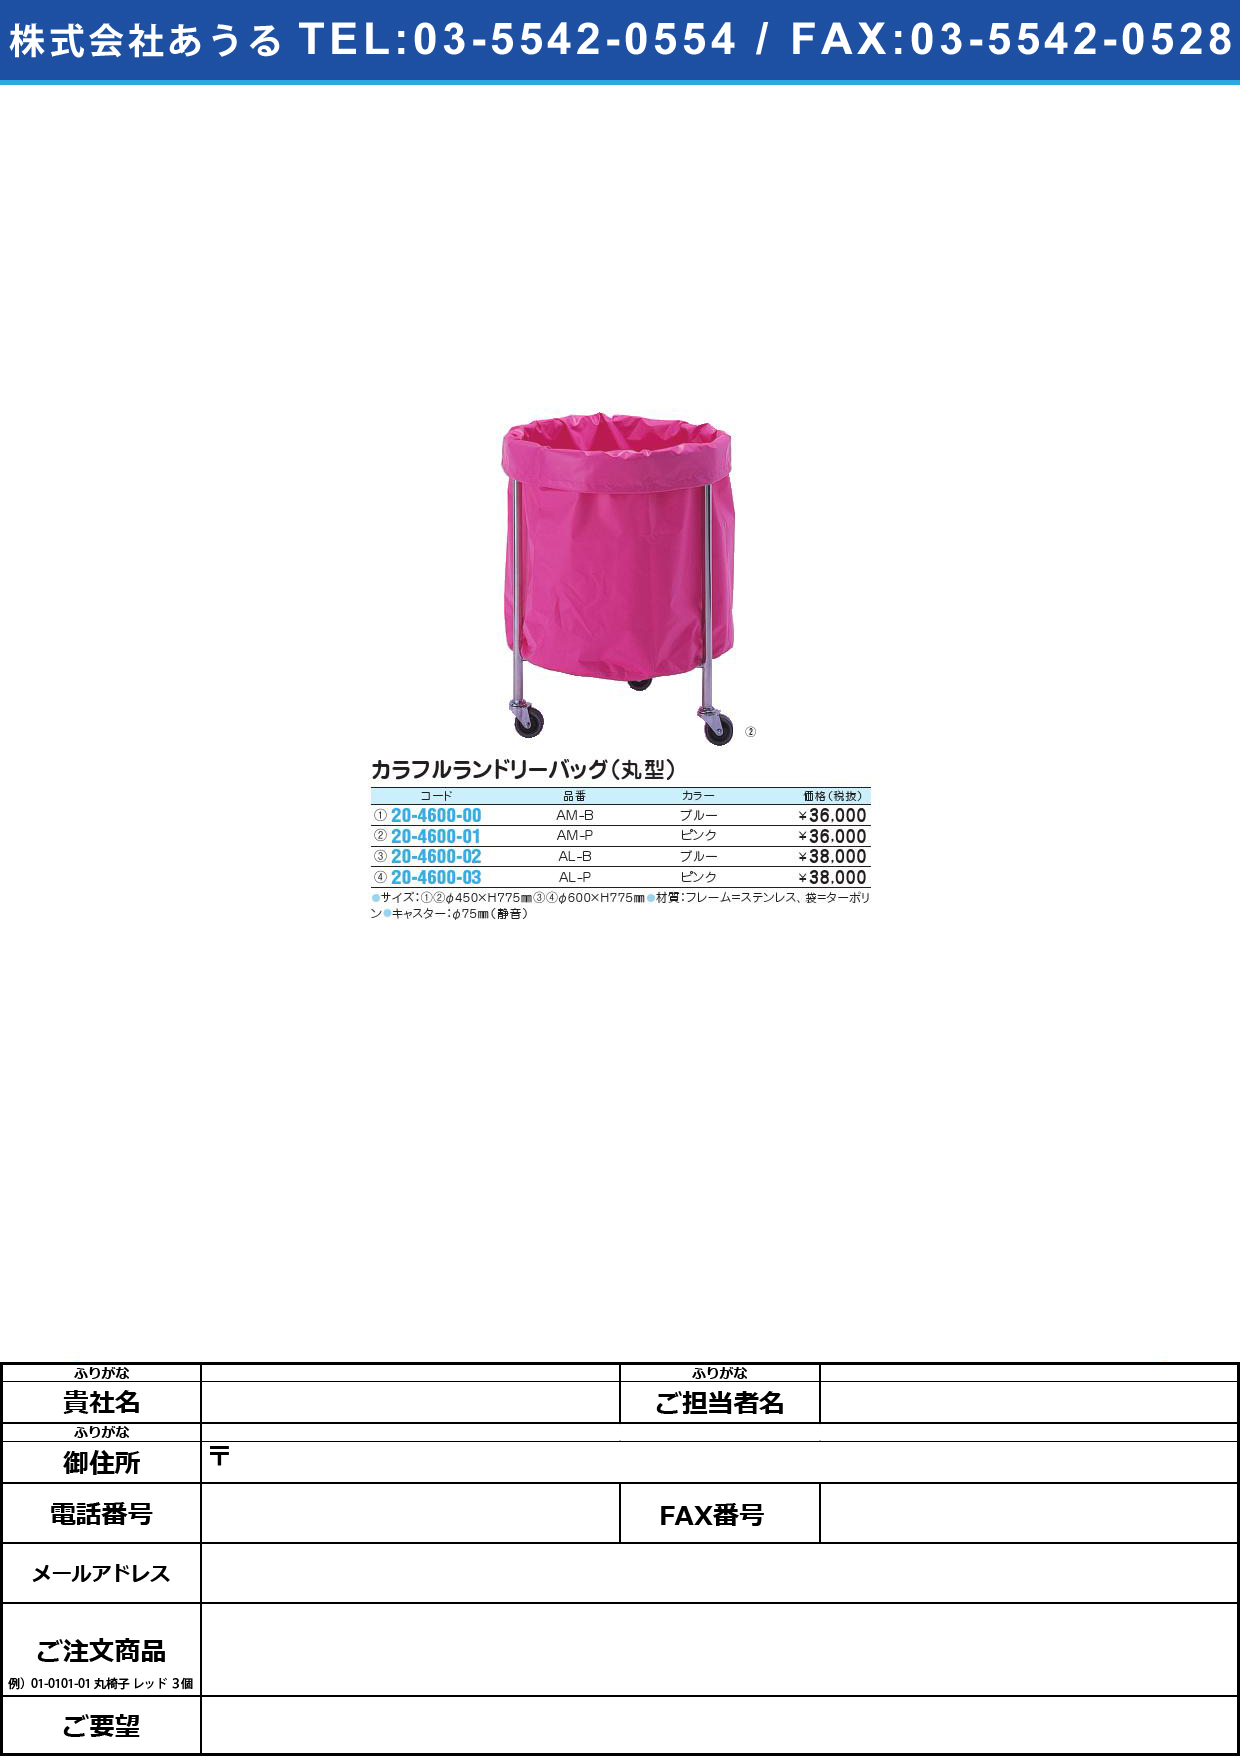 カラフルランドリーバッグ（丸型） SK-248･AL-B(ﾌﾞﾙｰ)ｶﾗﾌﾙﾗﾝﾄﾞﾘｰﾊﾞｯｸﾞﾏﾙｶﾞﾀ(20-4600-02)【1台単位】